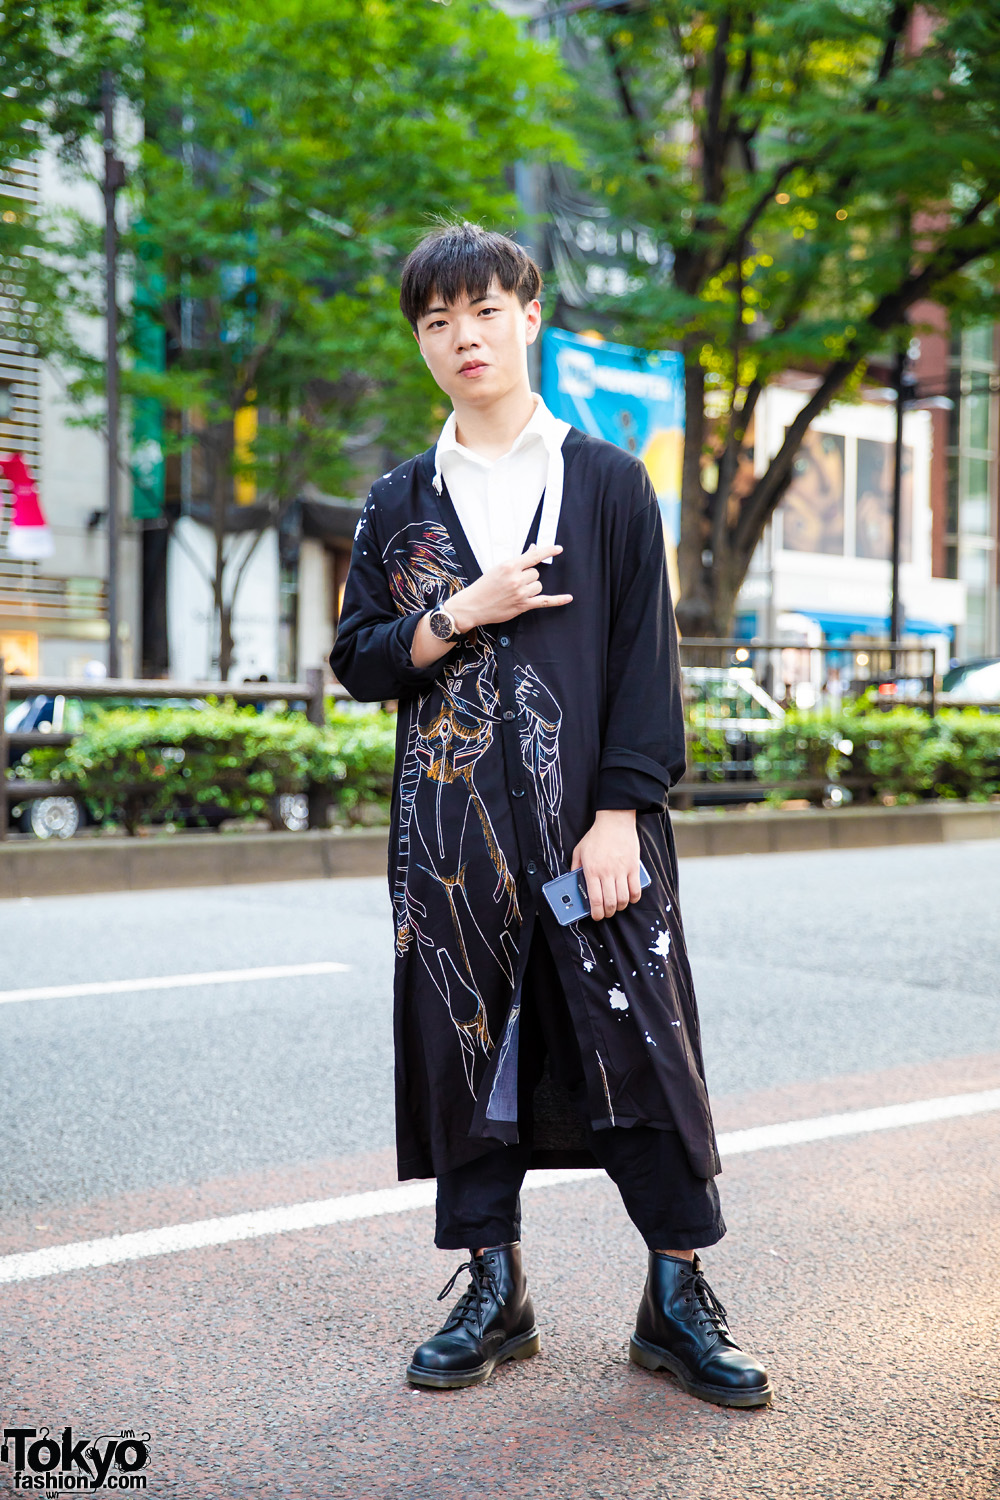 Yohji x Evangelion Printed Cardigan & Black Leather Boots in Harajuku ...